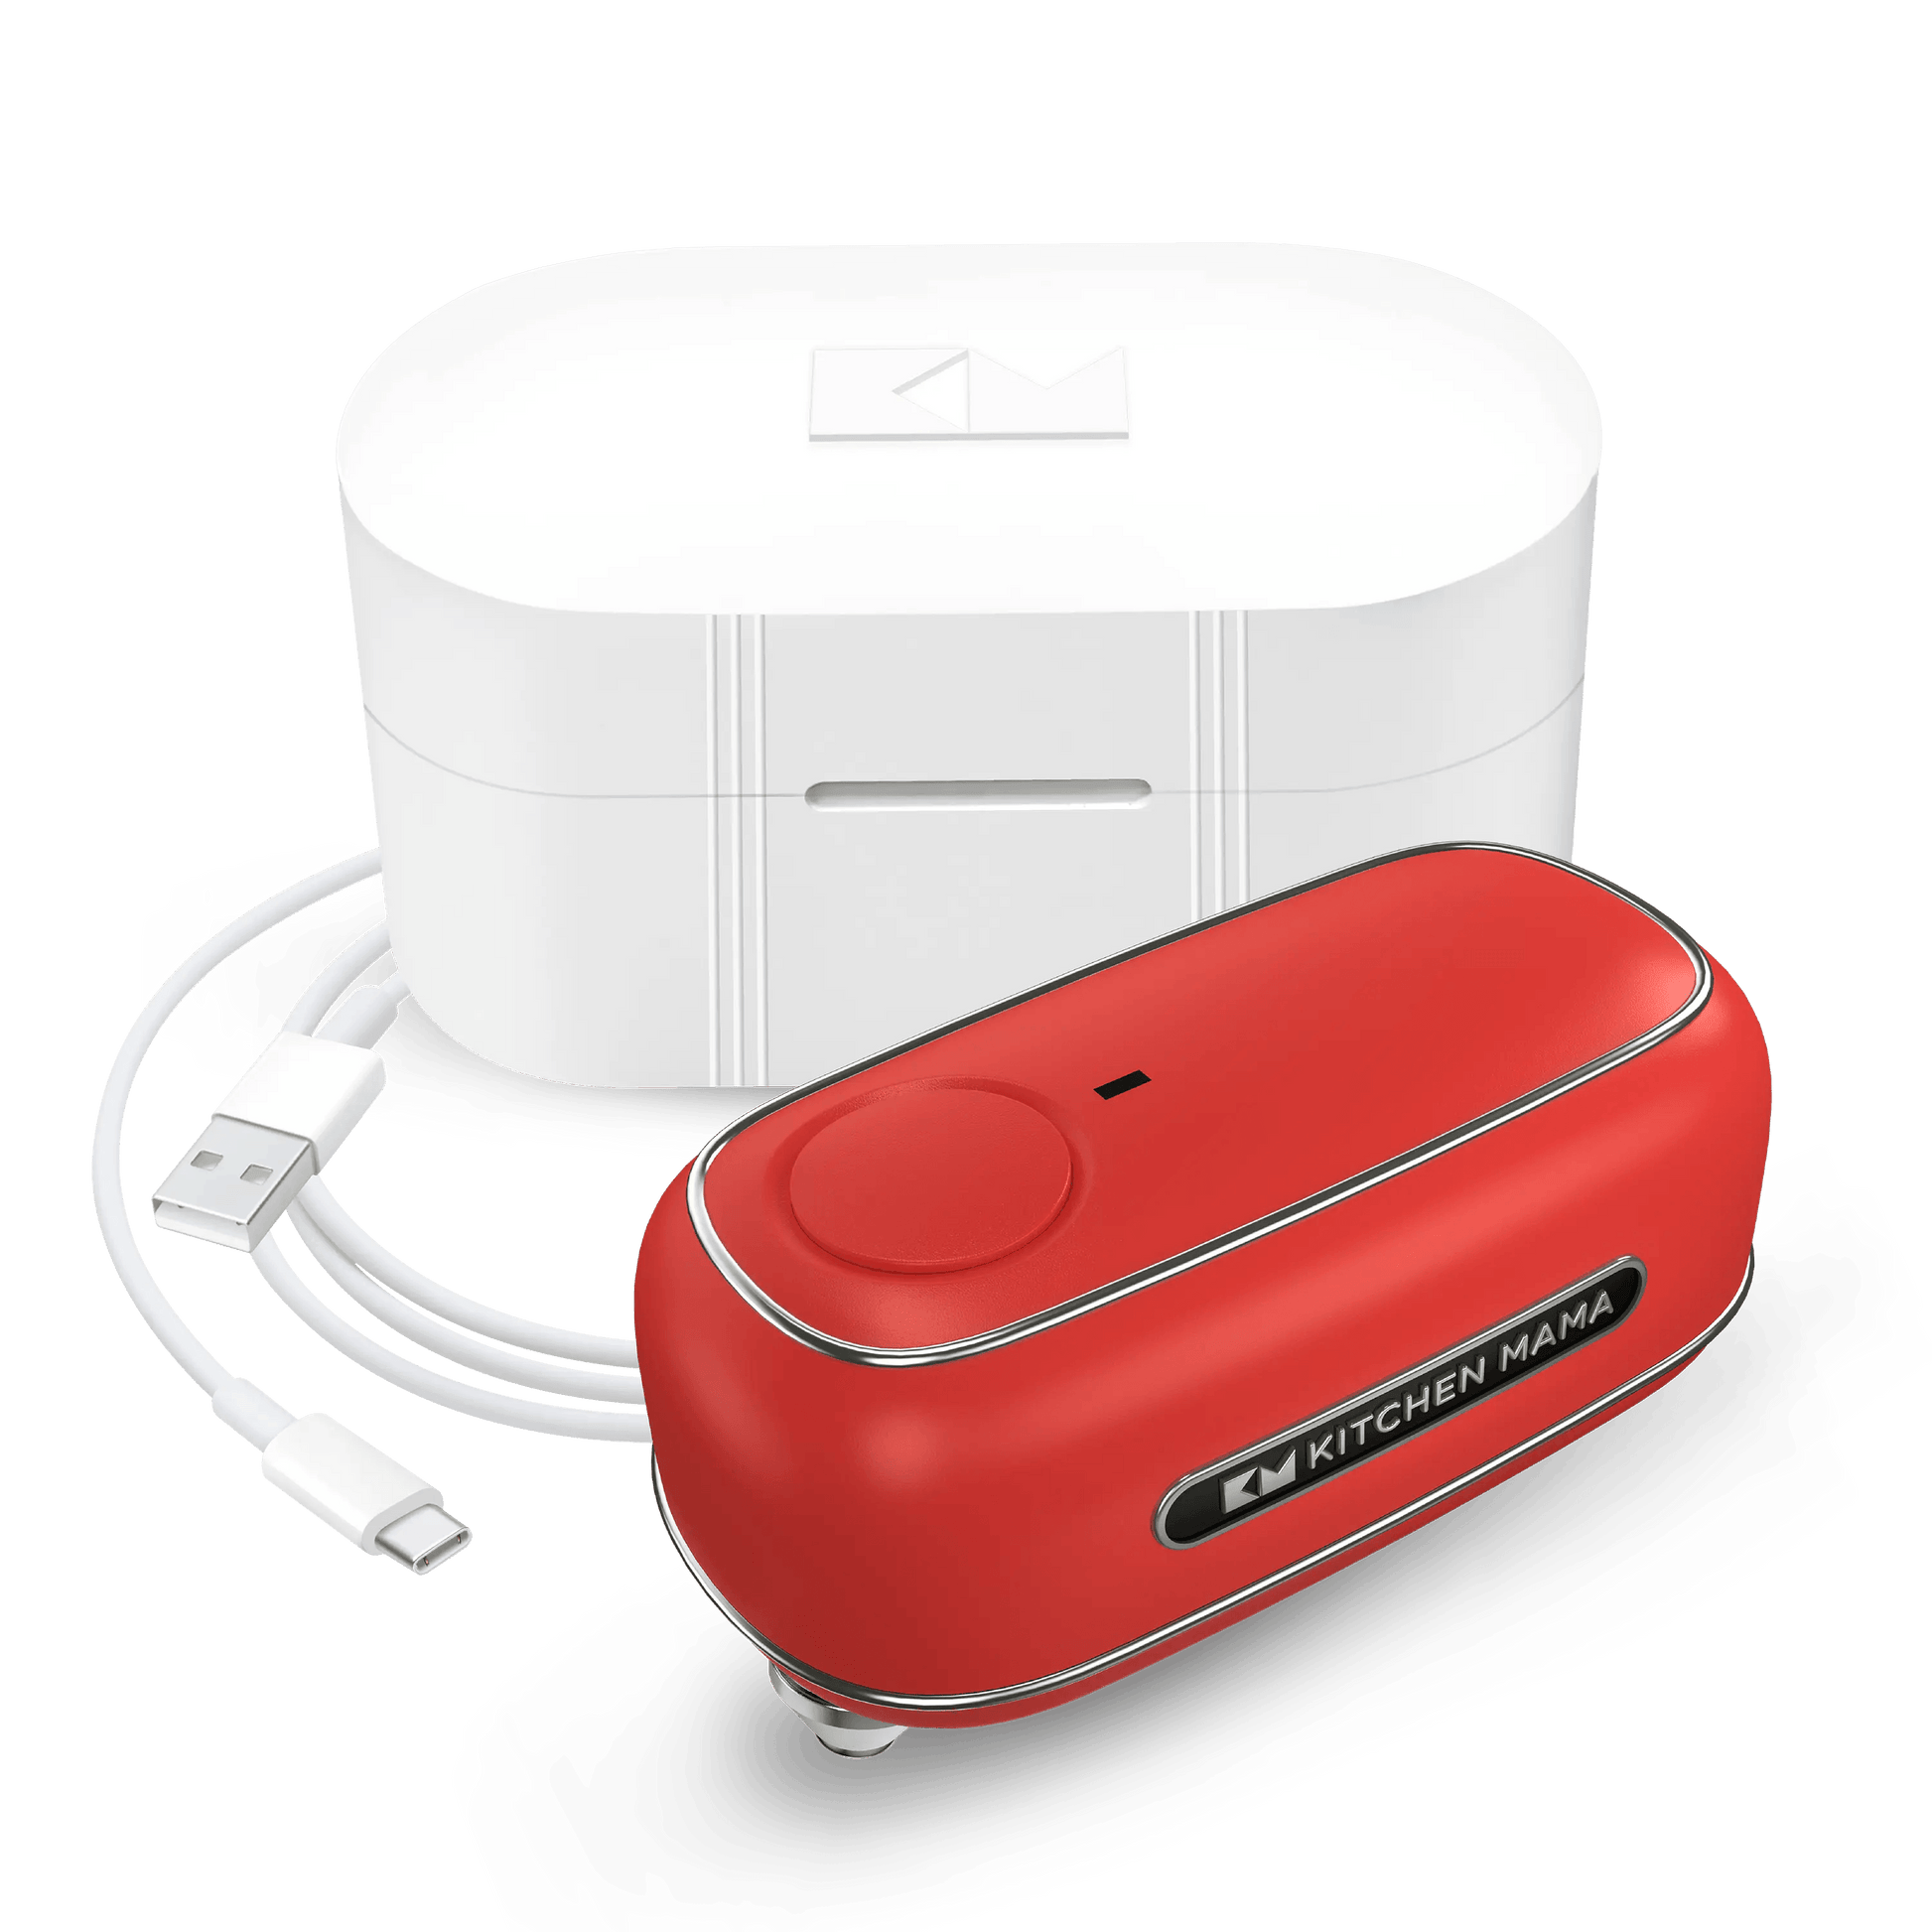 Kitchen Mama Orbit One Rechargeable Can Opener, CO5600-R, wiederaufladbarer Dosenöffner mit glatter Kante, freihändig, Orbit One, für große, kleine Dosen und Soda-Dosen, automatische Abschaltung, inklusive Aufbewahrungsbox 